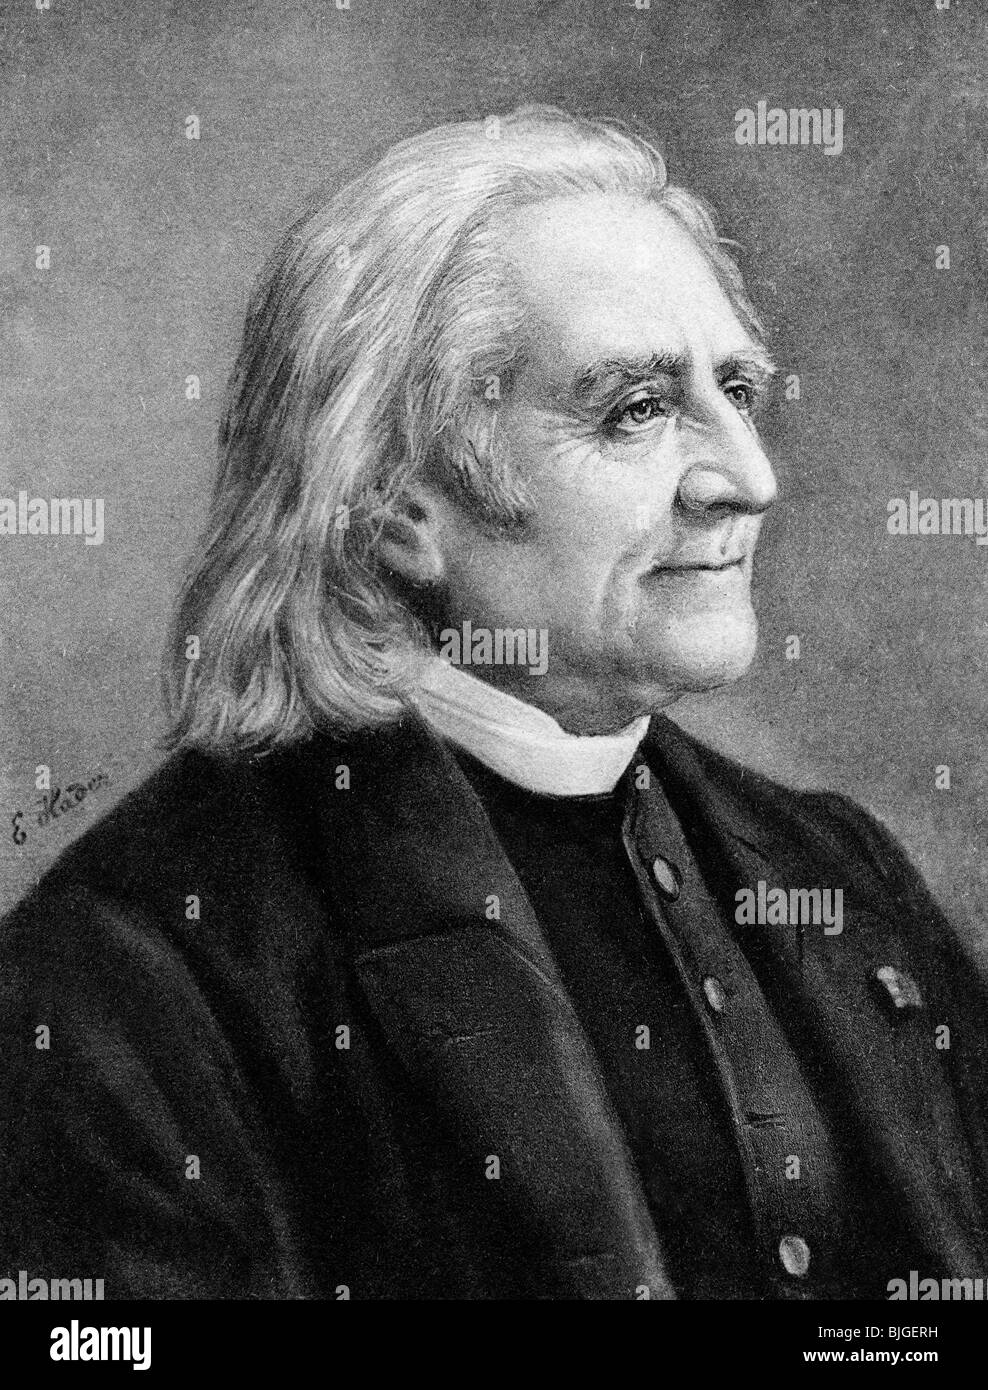 Liszt, Franz, 22.10.1811 - 31.7.1886, compositeur et pianiste hongrois, portrait après dessin de E. hader, vers 1885, Banque D'Images